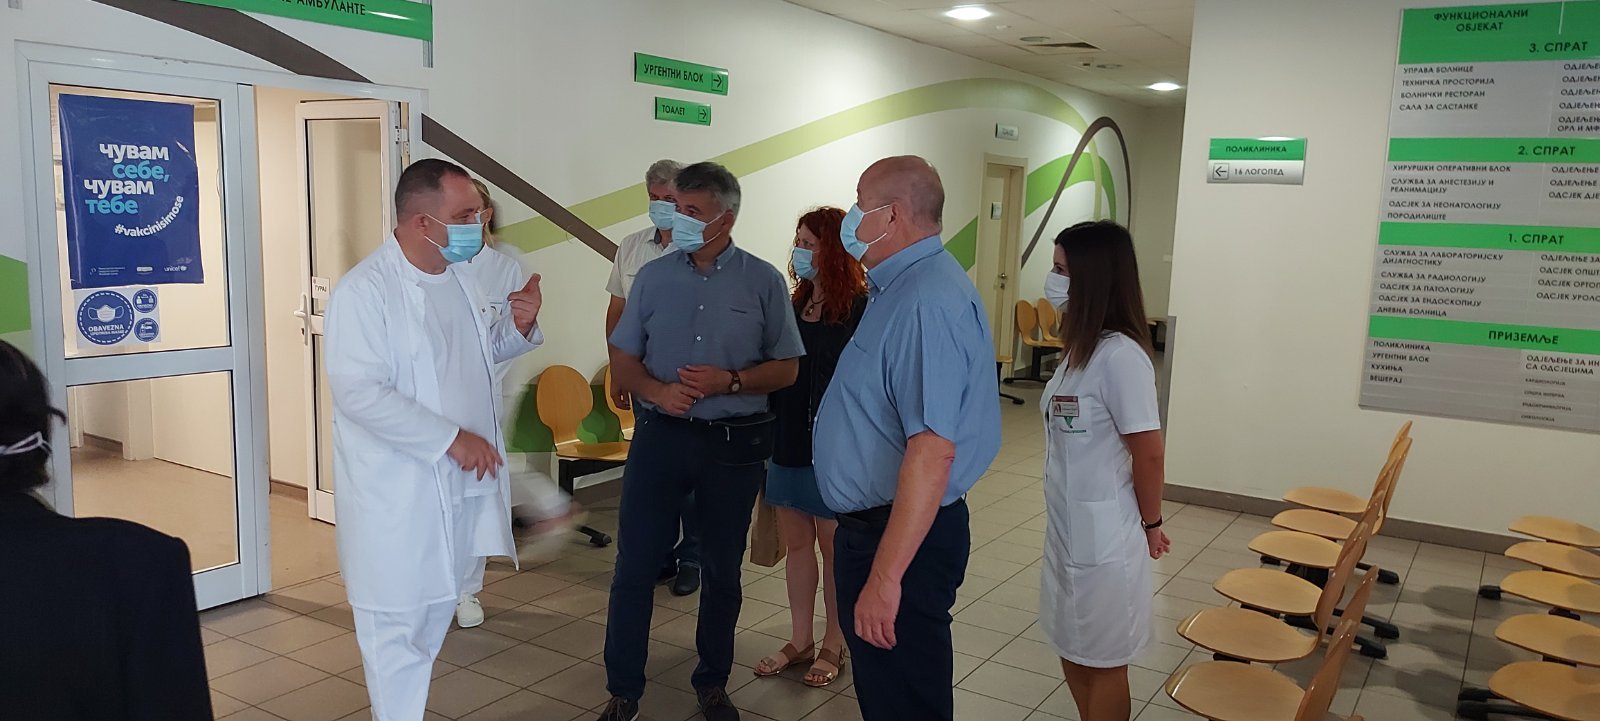 Slovenačka delegacija posjetila bijeljinsku Bolnicu